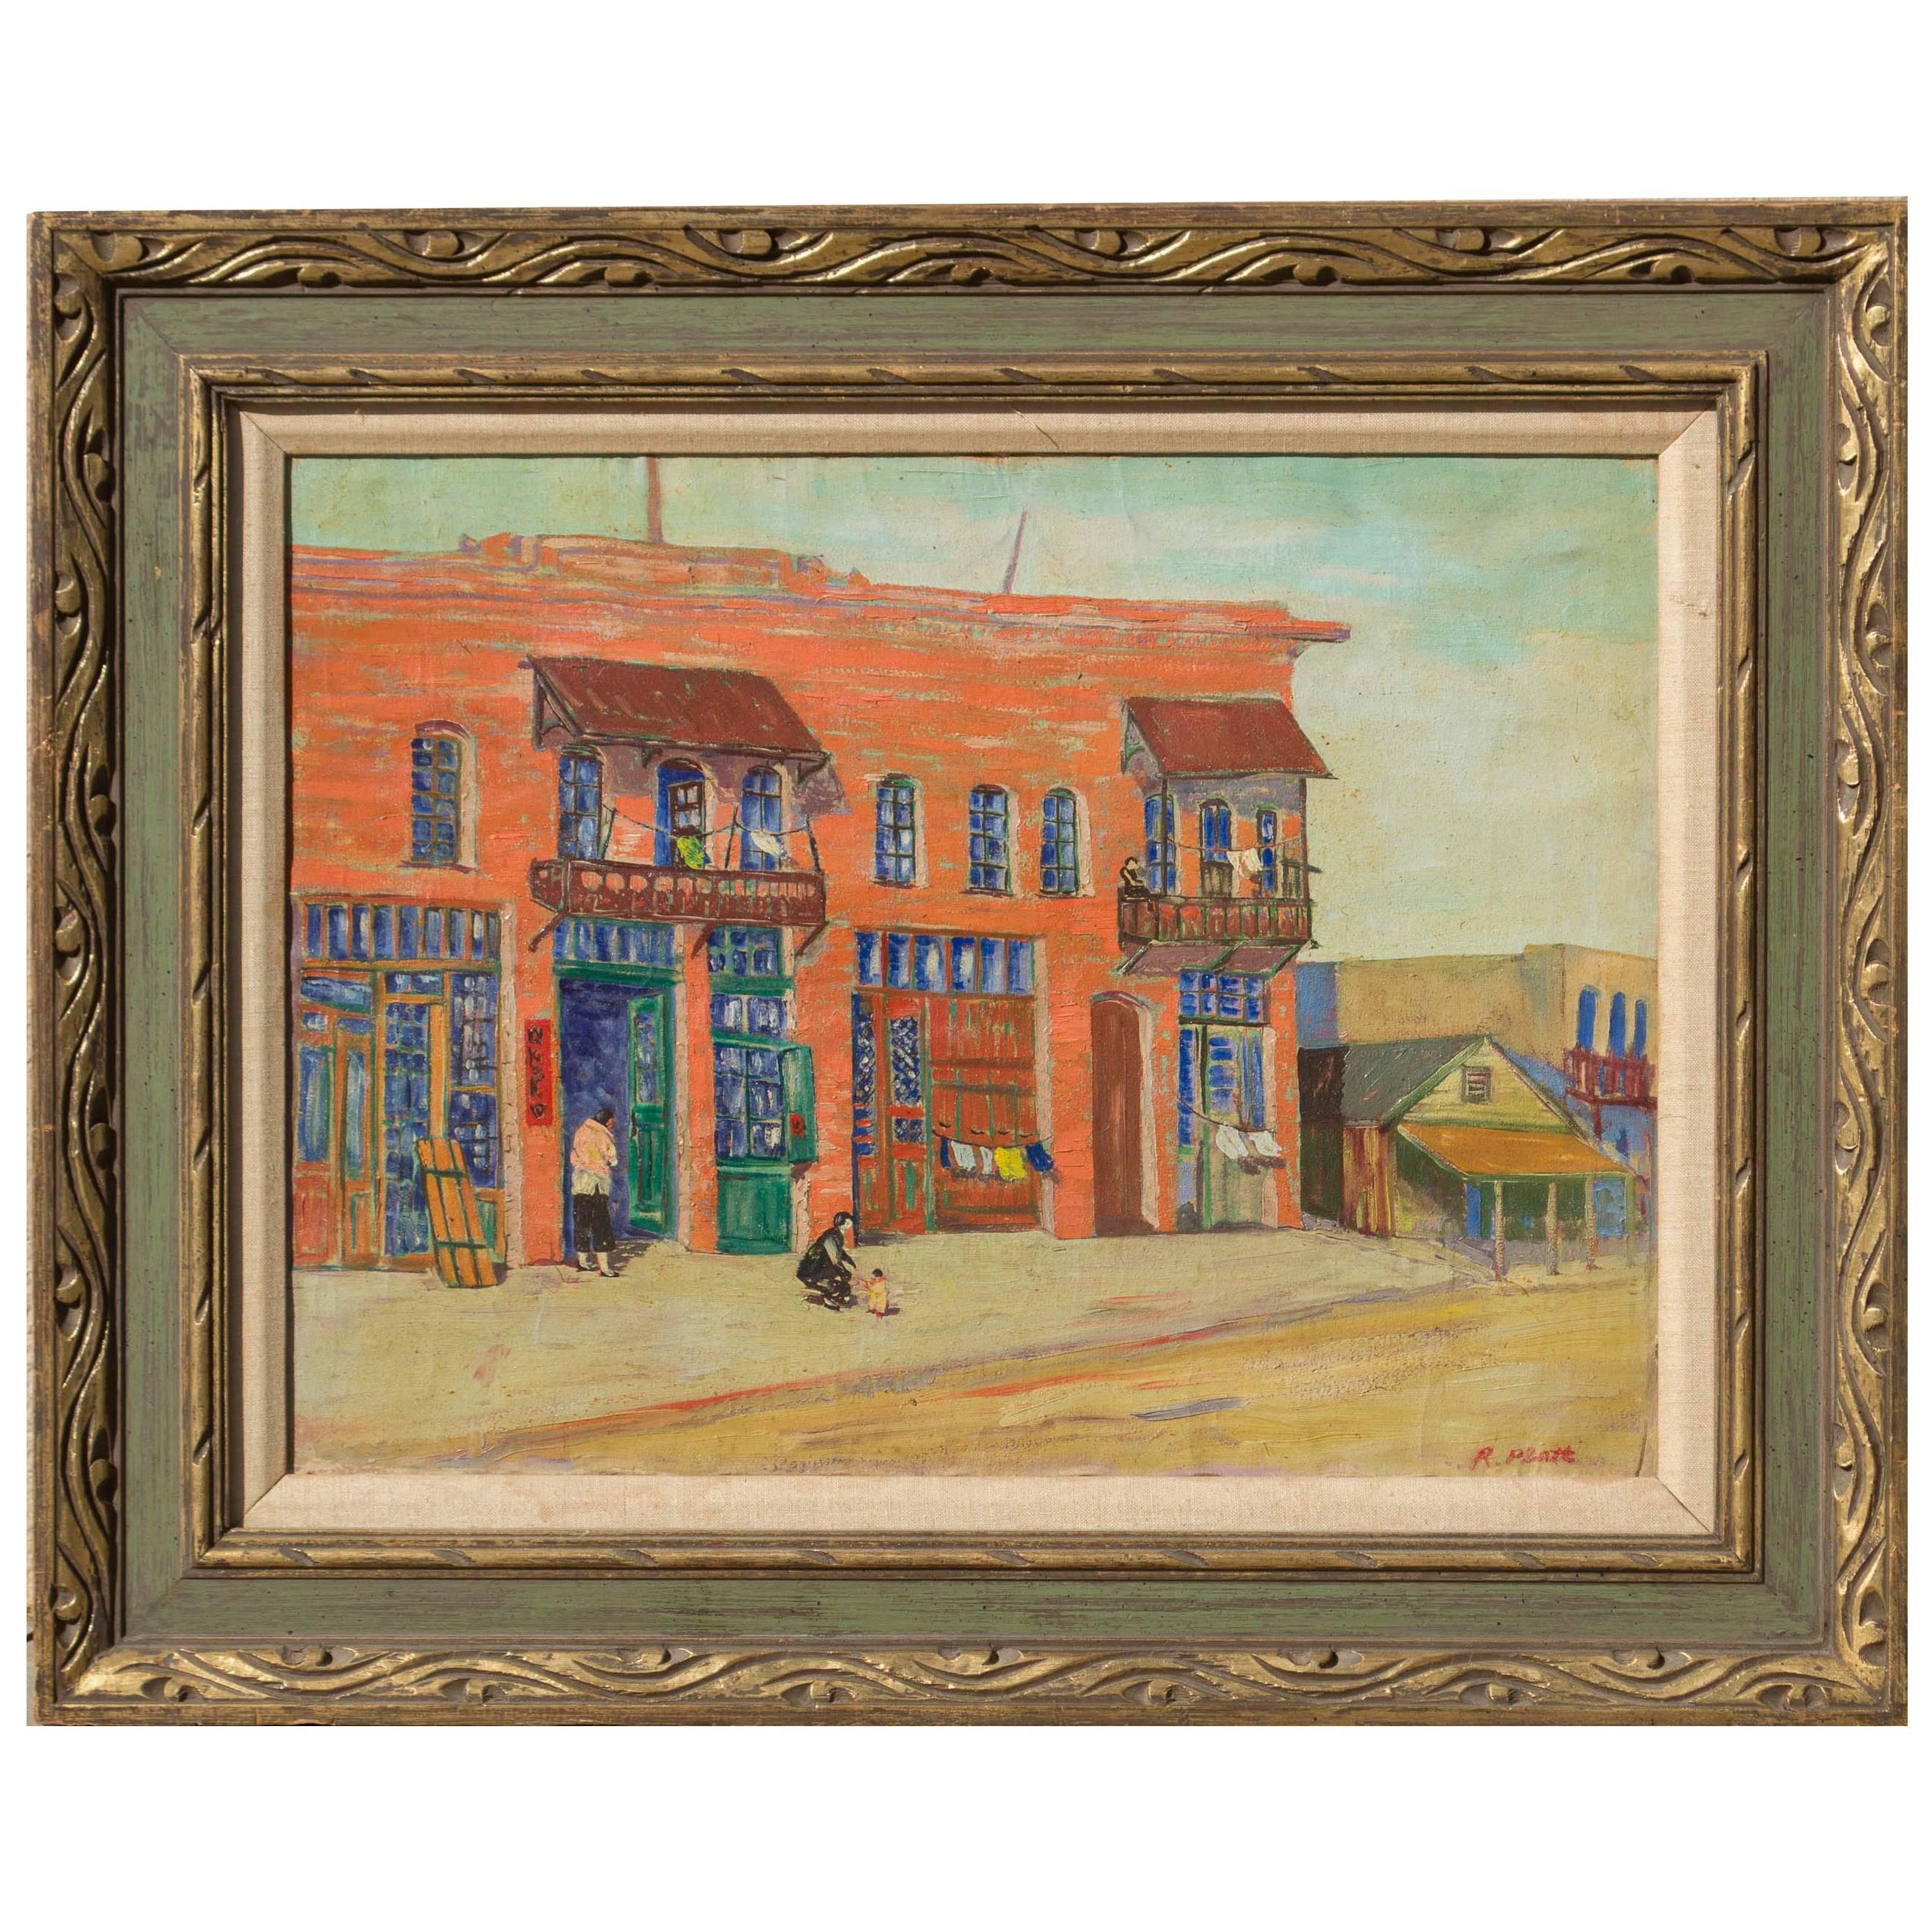 Peinture à l'huile sur toile de R. Platt, datant du 20e siècle et réalisée à Los Angeles, vers les années 1930 en vente